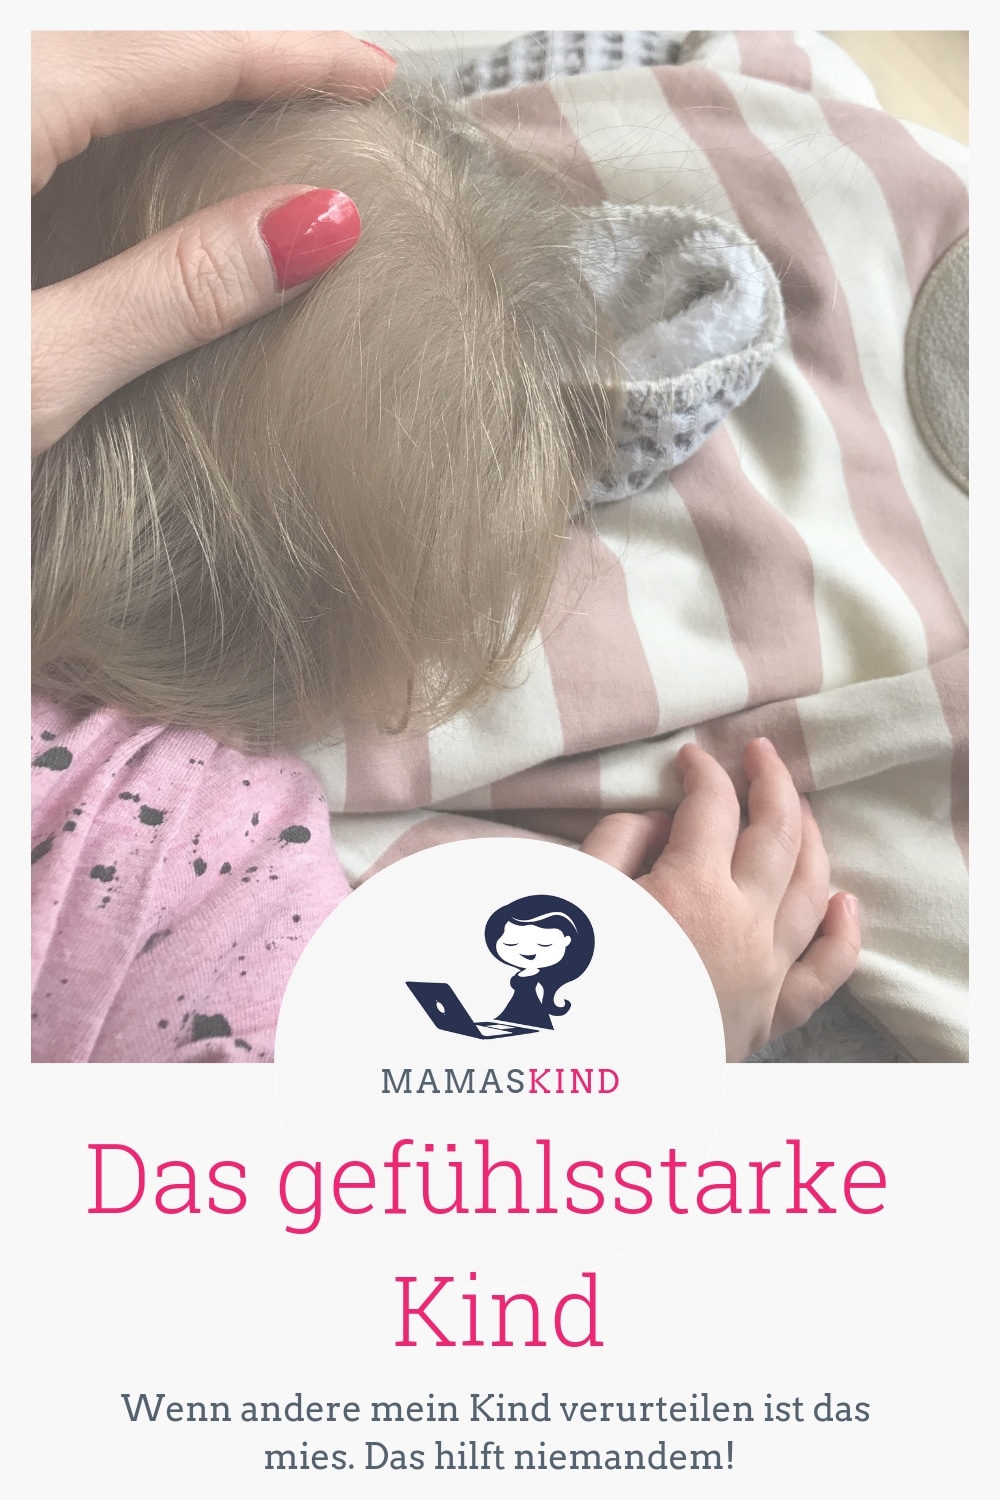 Das gefühlsstarke Kind - ich habe eines und Außenstehende verurteilen es. | Mehr Infos auf Mamaskind.de